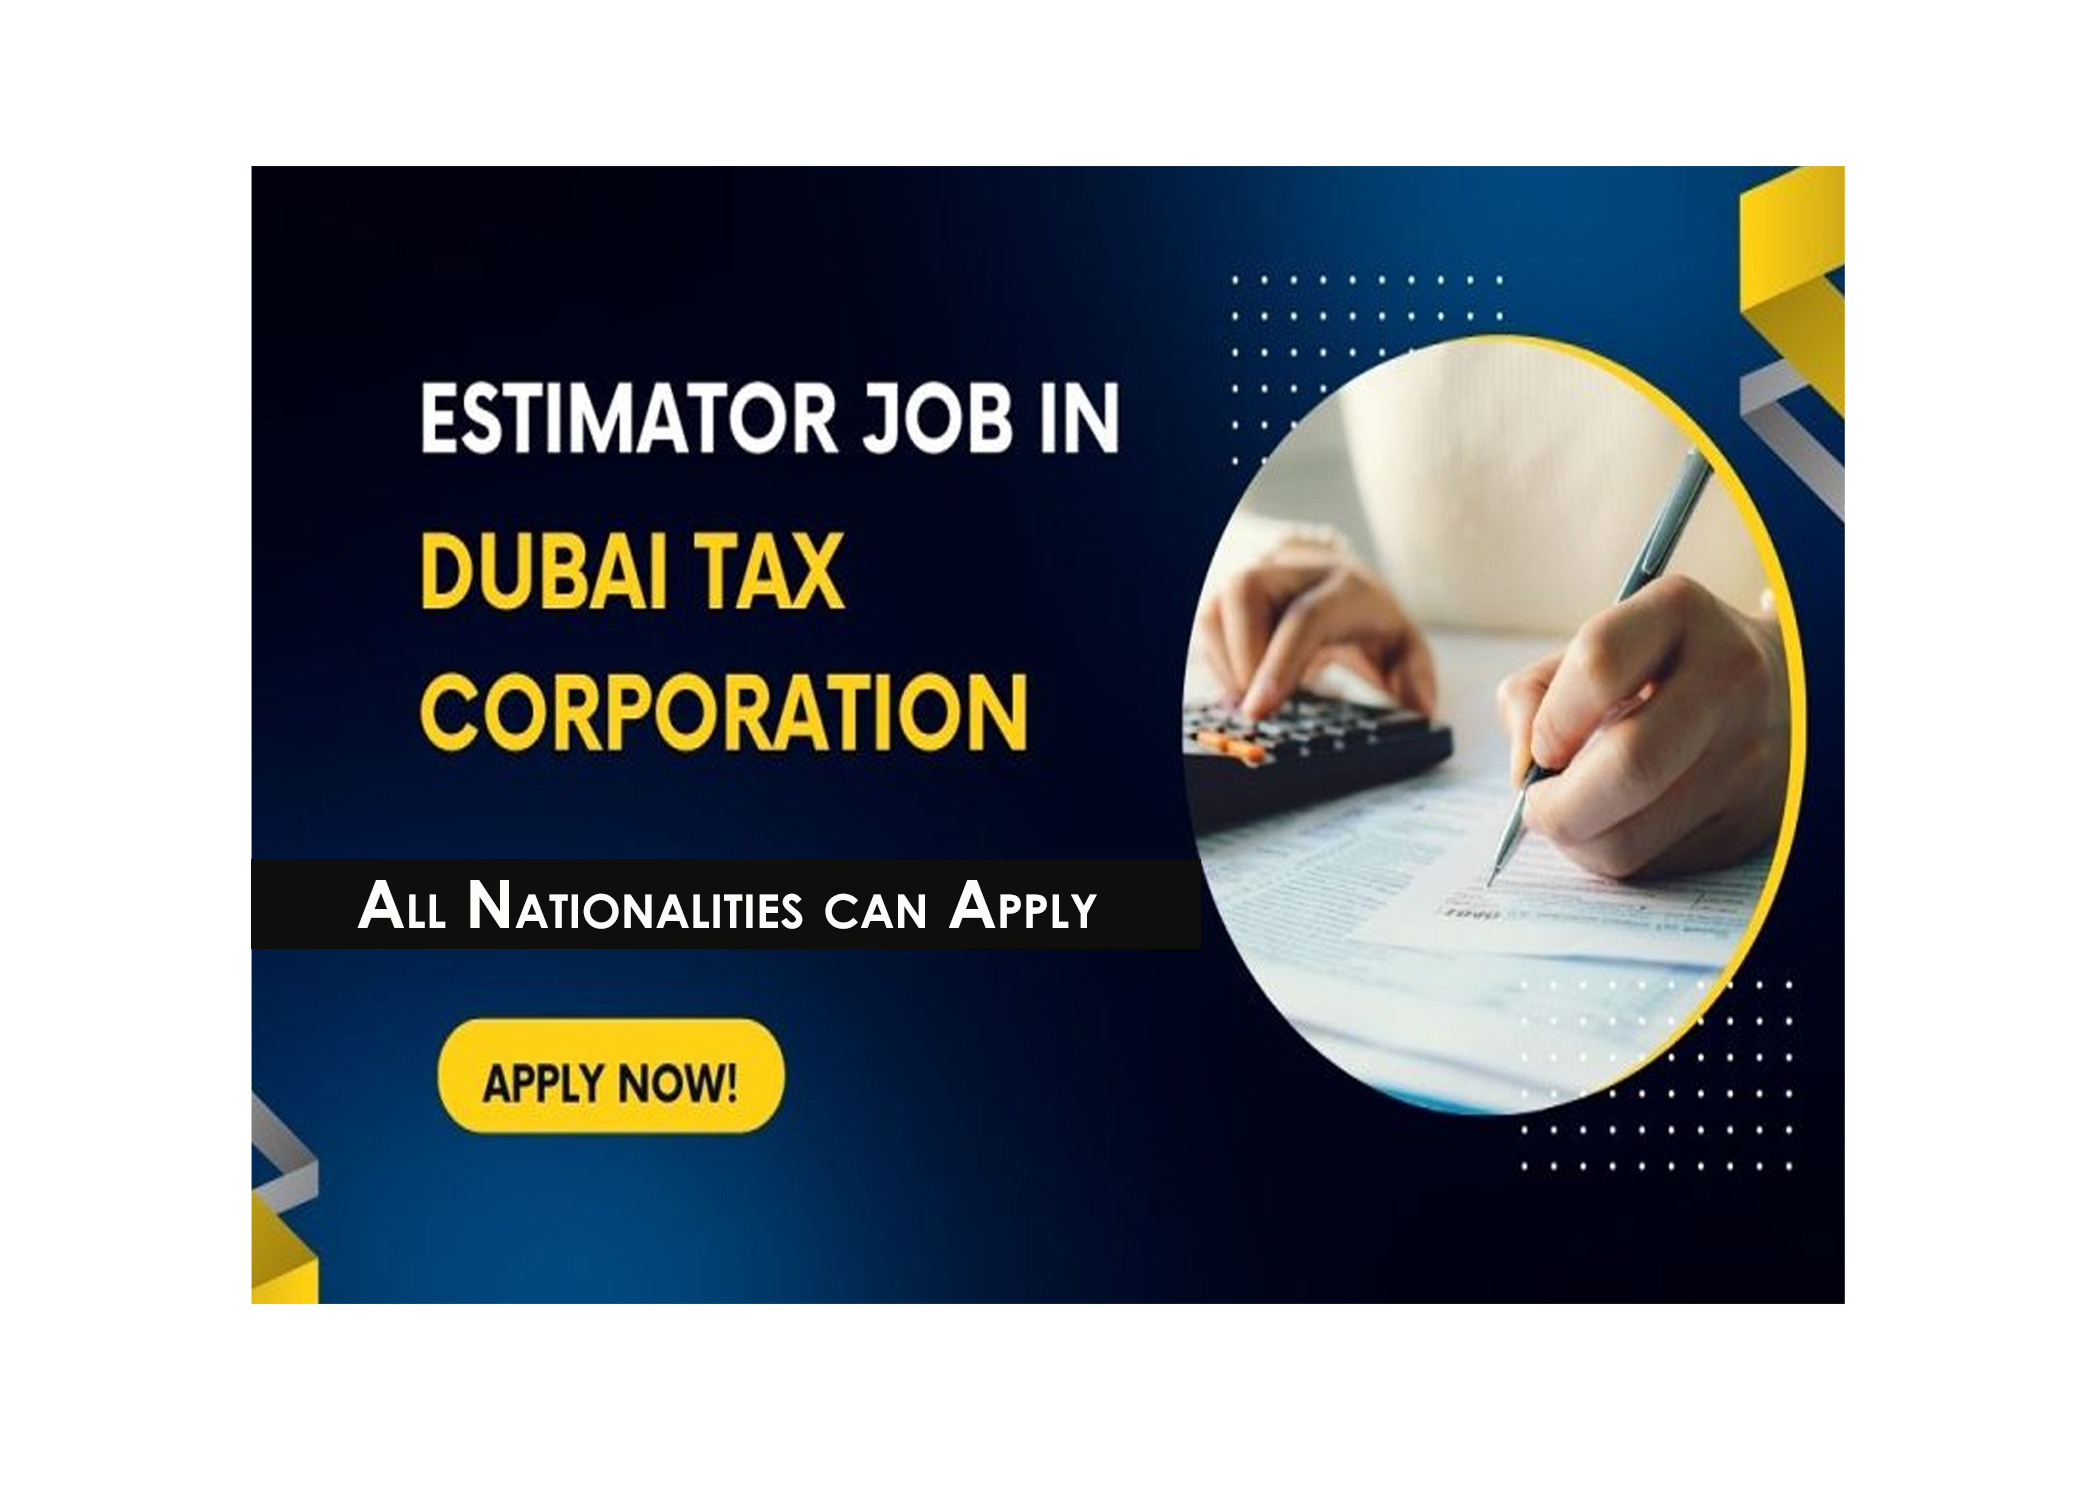 Estimator Job in Dubai Taxi Corporation, Dubai